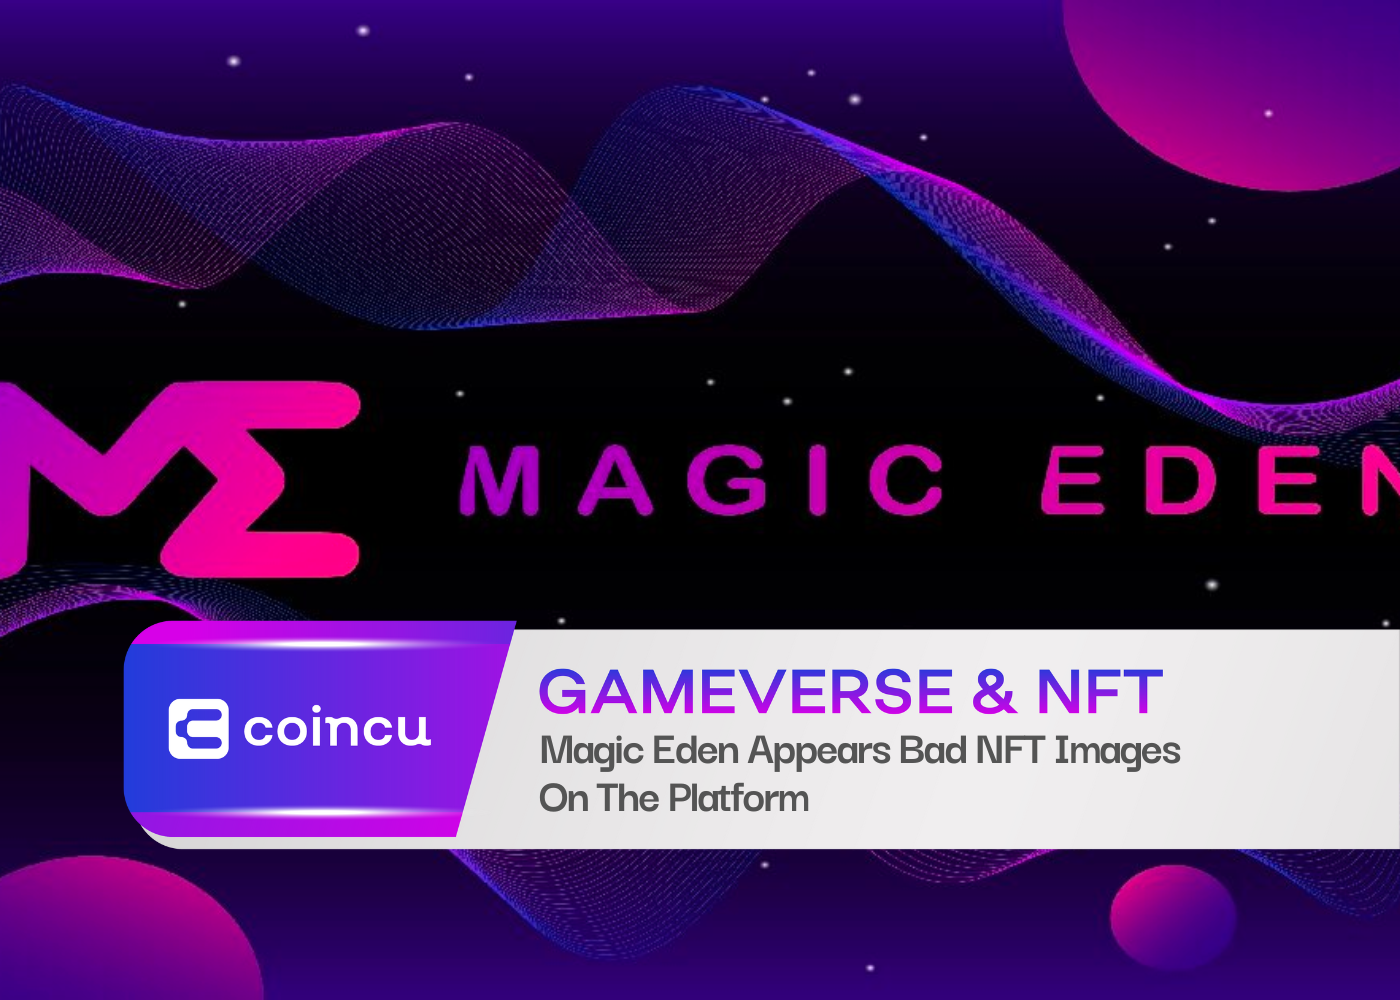 Magic Eden Appears Bad NFT Images On The Platform